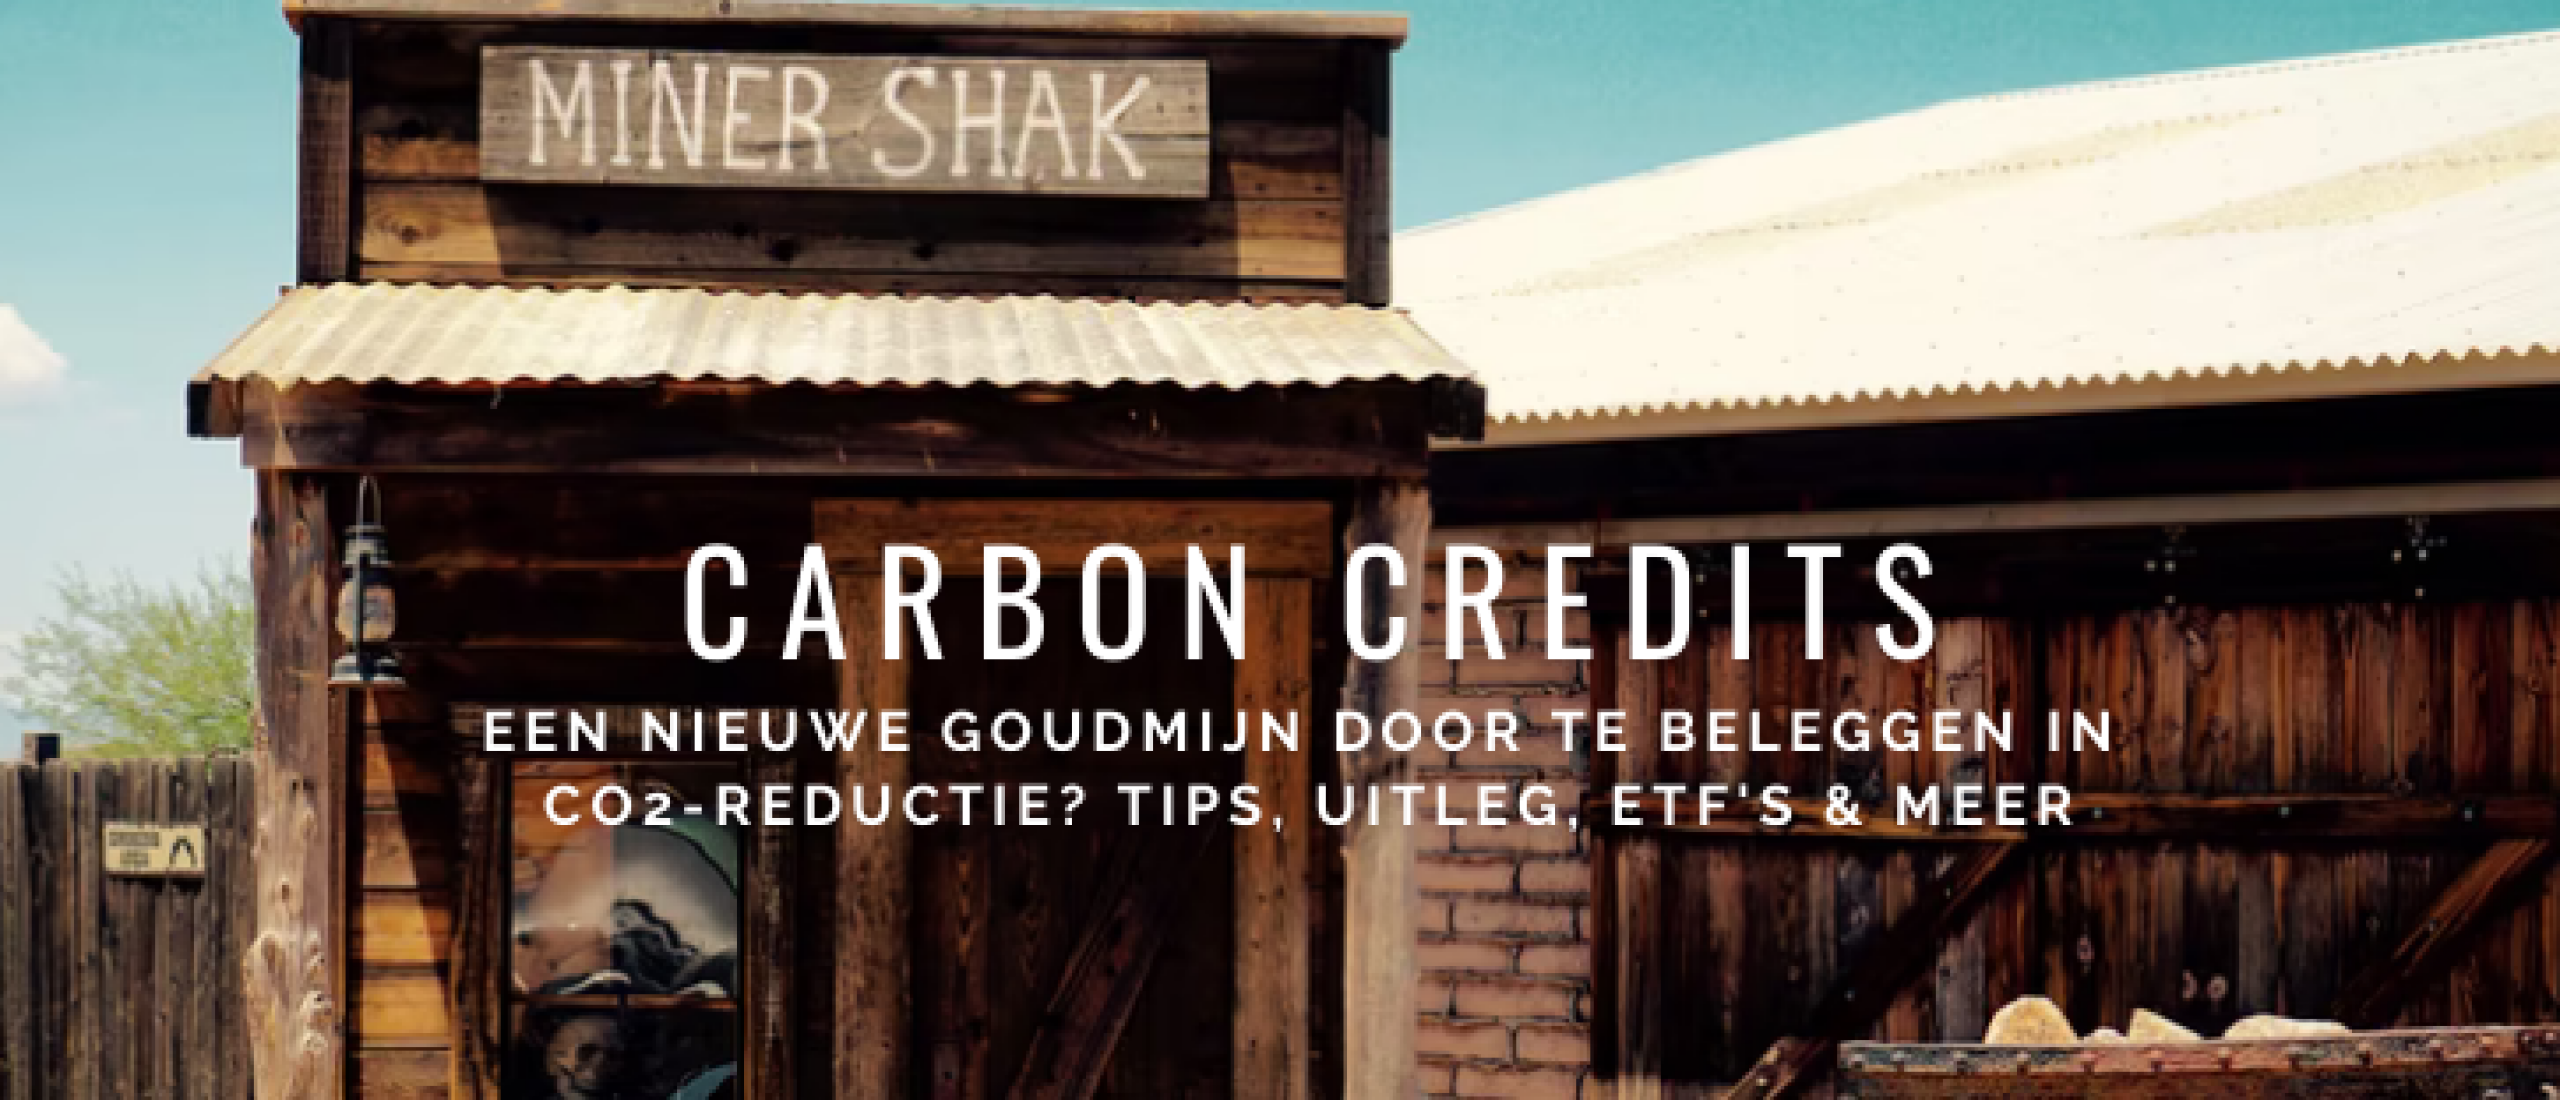 Beleggen in Carbon Credits: CO2-goudmijn in 2022? Tips & ETF’s